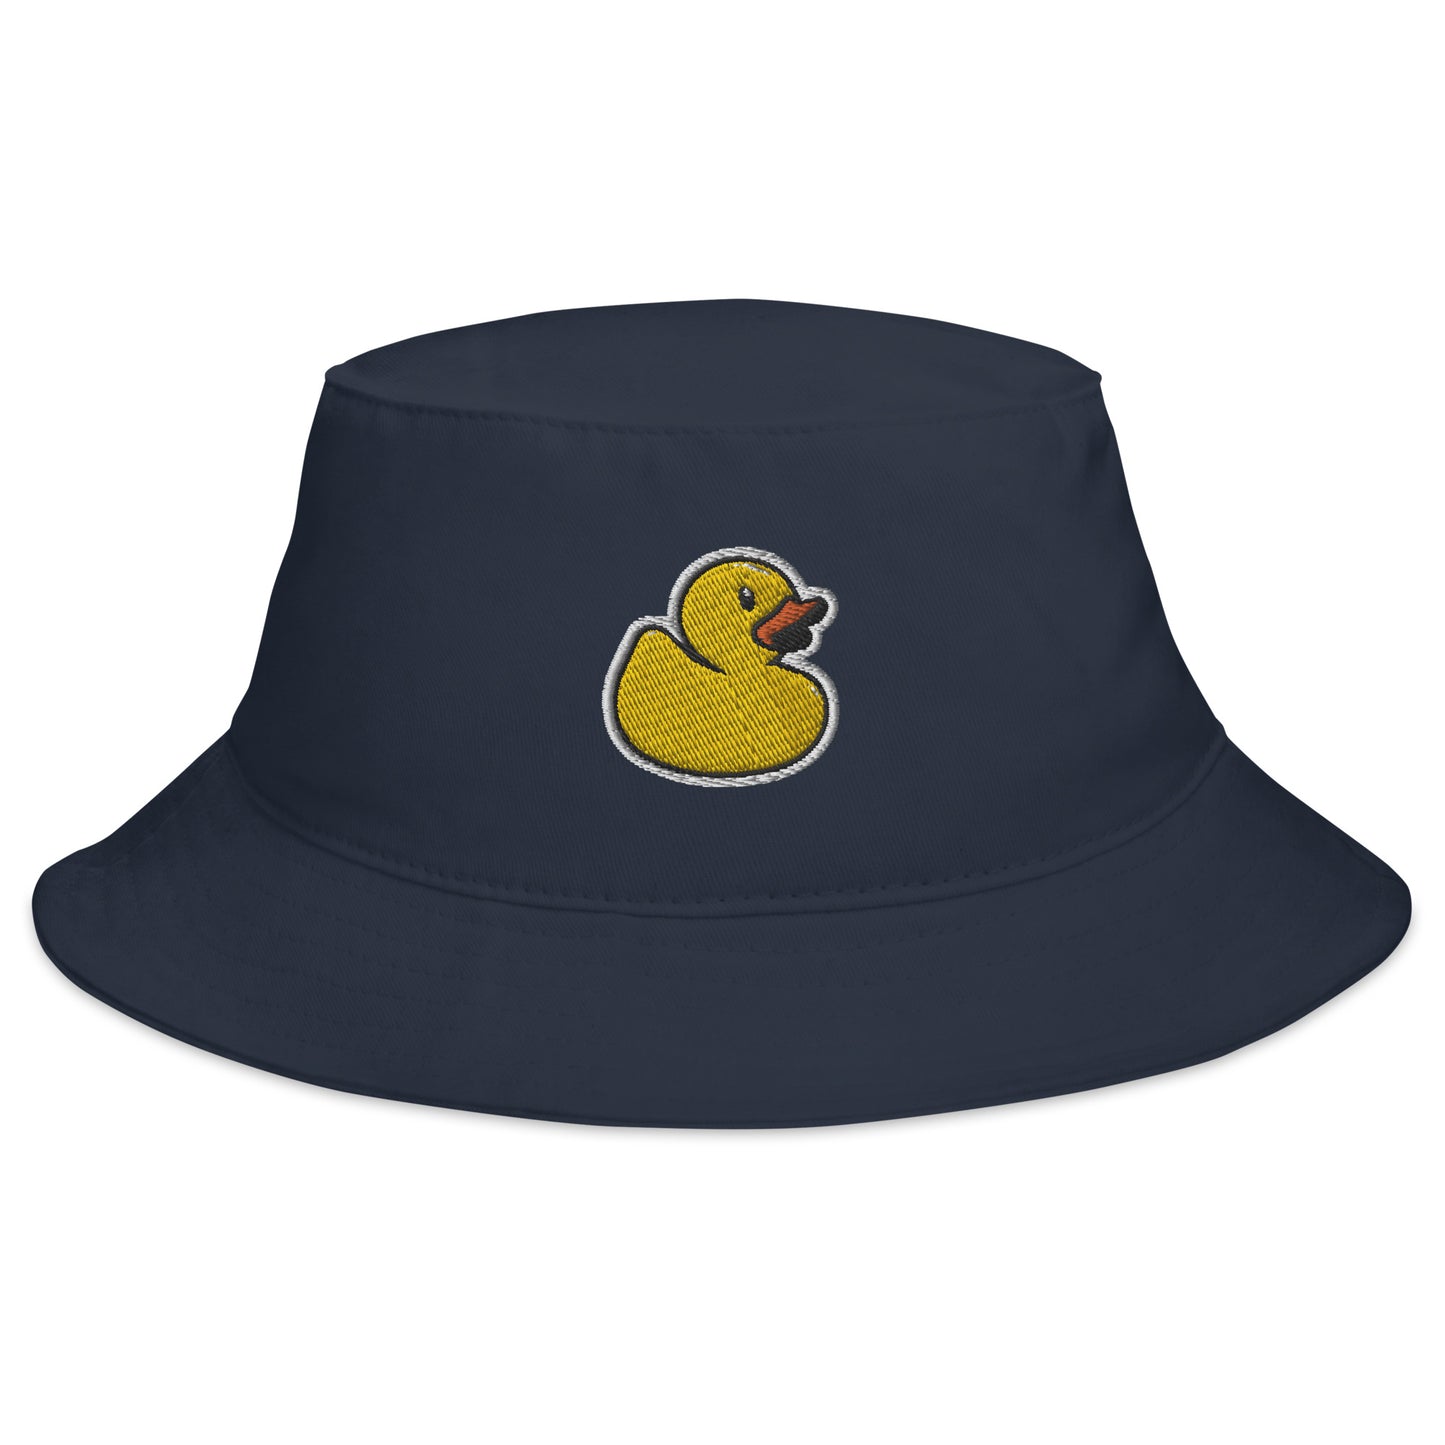 Get Ducked Bucket Hat